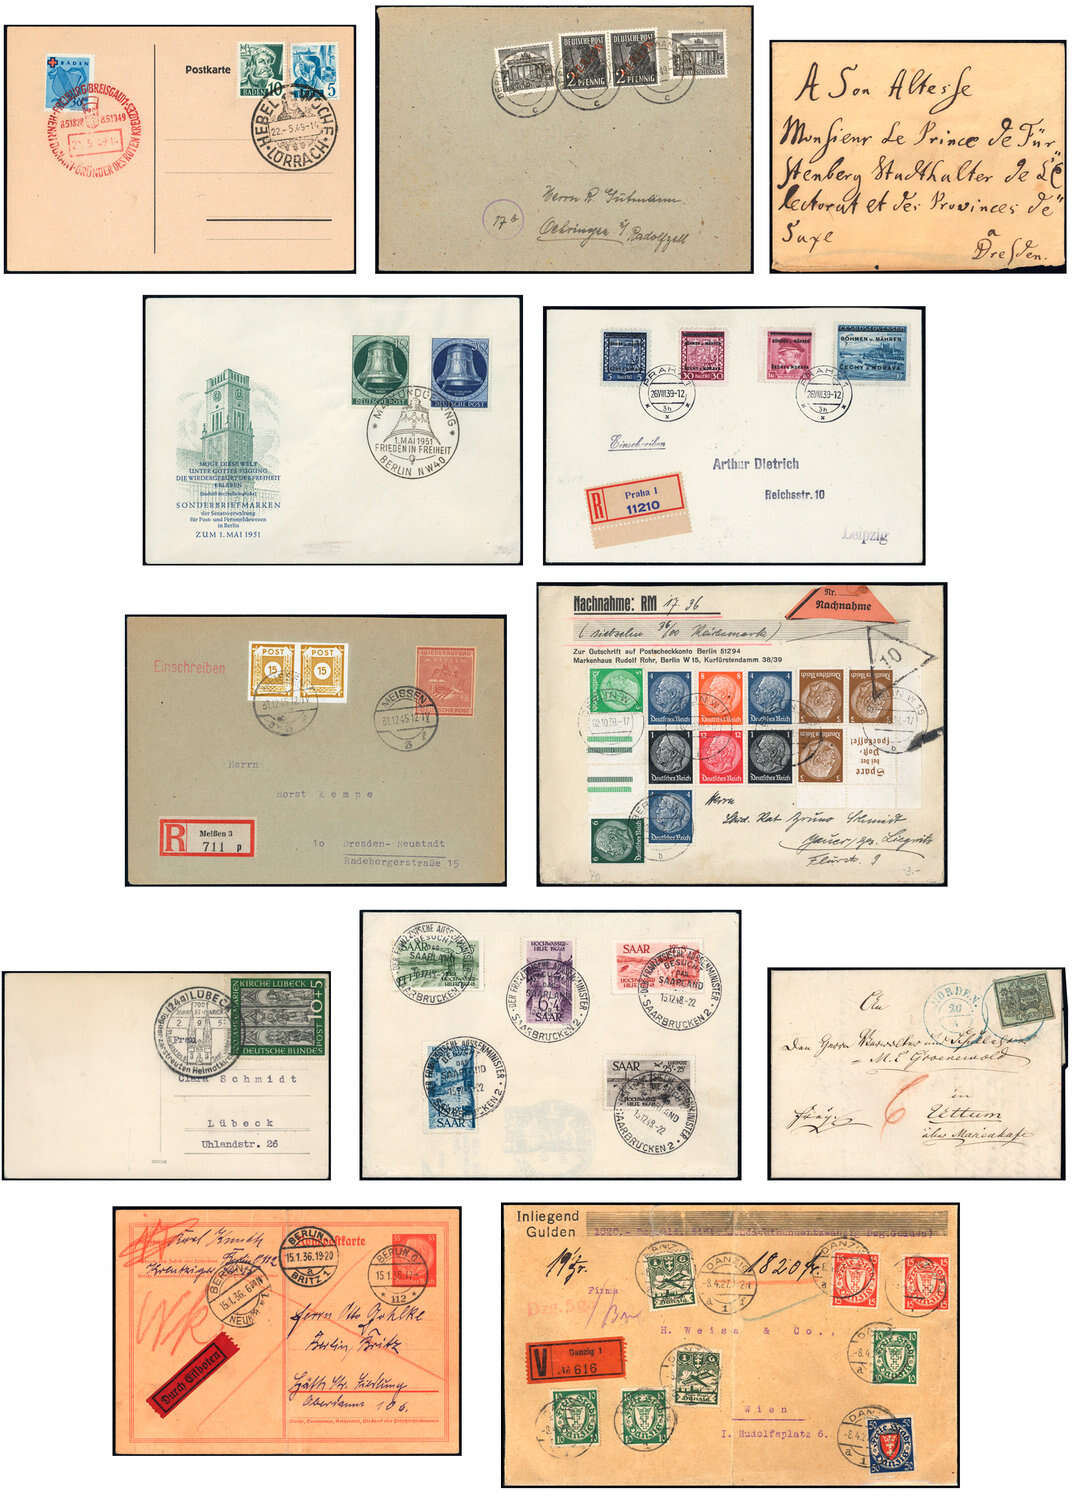 Lot 27 - sammlungen und posten sammlungen und posten briefe -  Deutsche Briefmarken AG 6th Large Lot Auction Deutsche Briefmarken AG